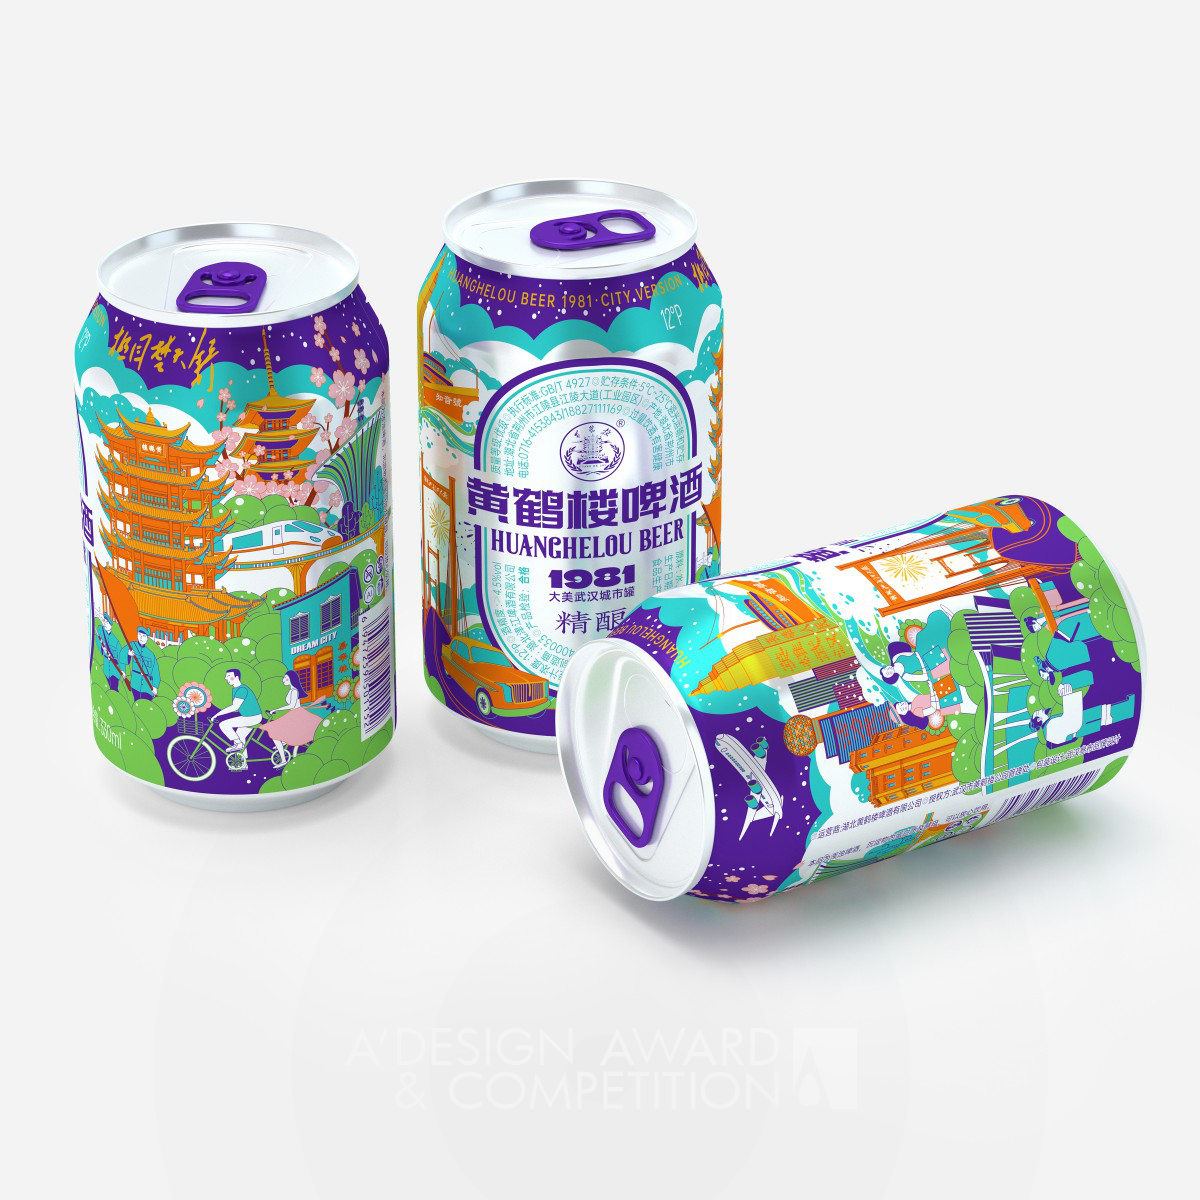  Beer Packaging